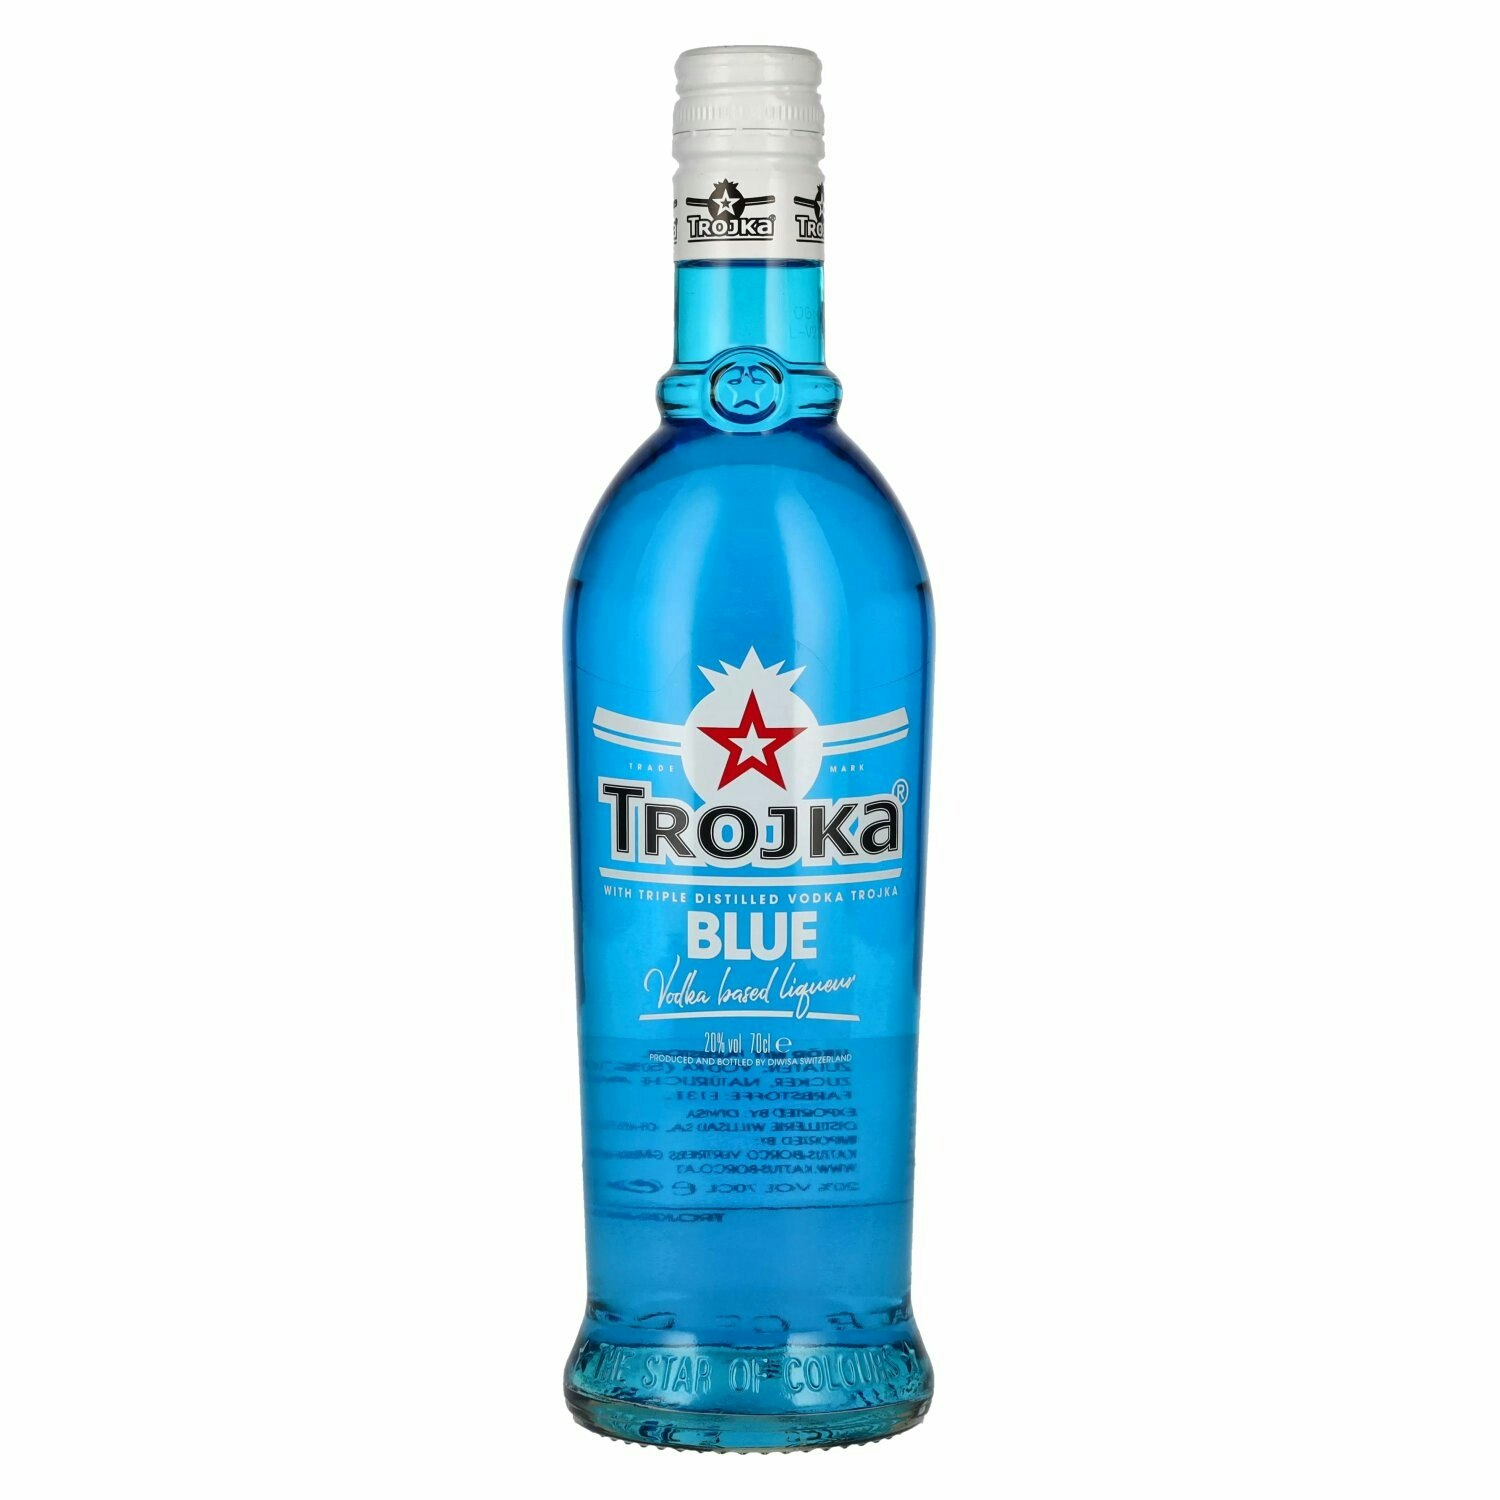 Trojka BLUE Premium Spirit Drink 20% Vol. 0,7l